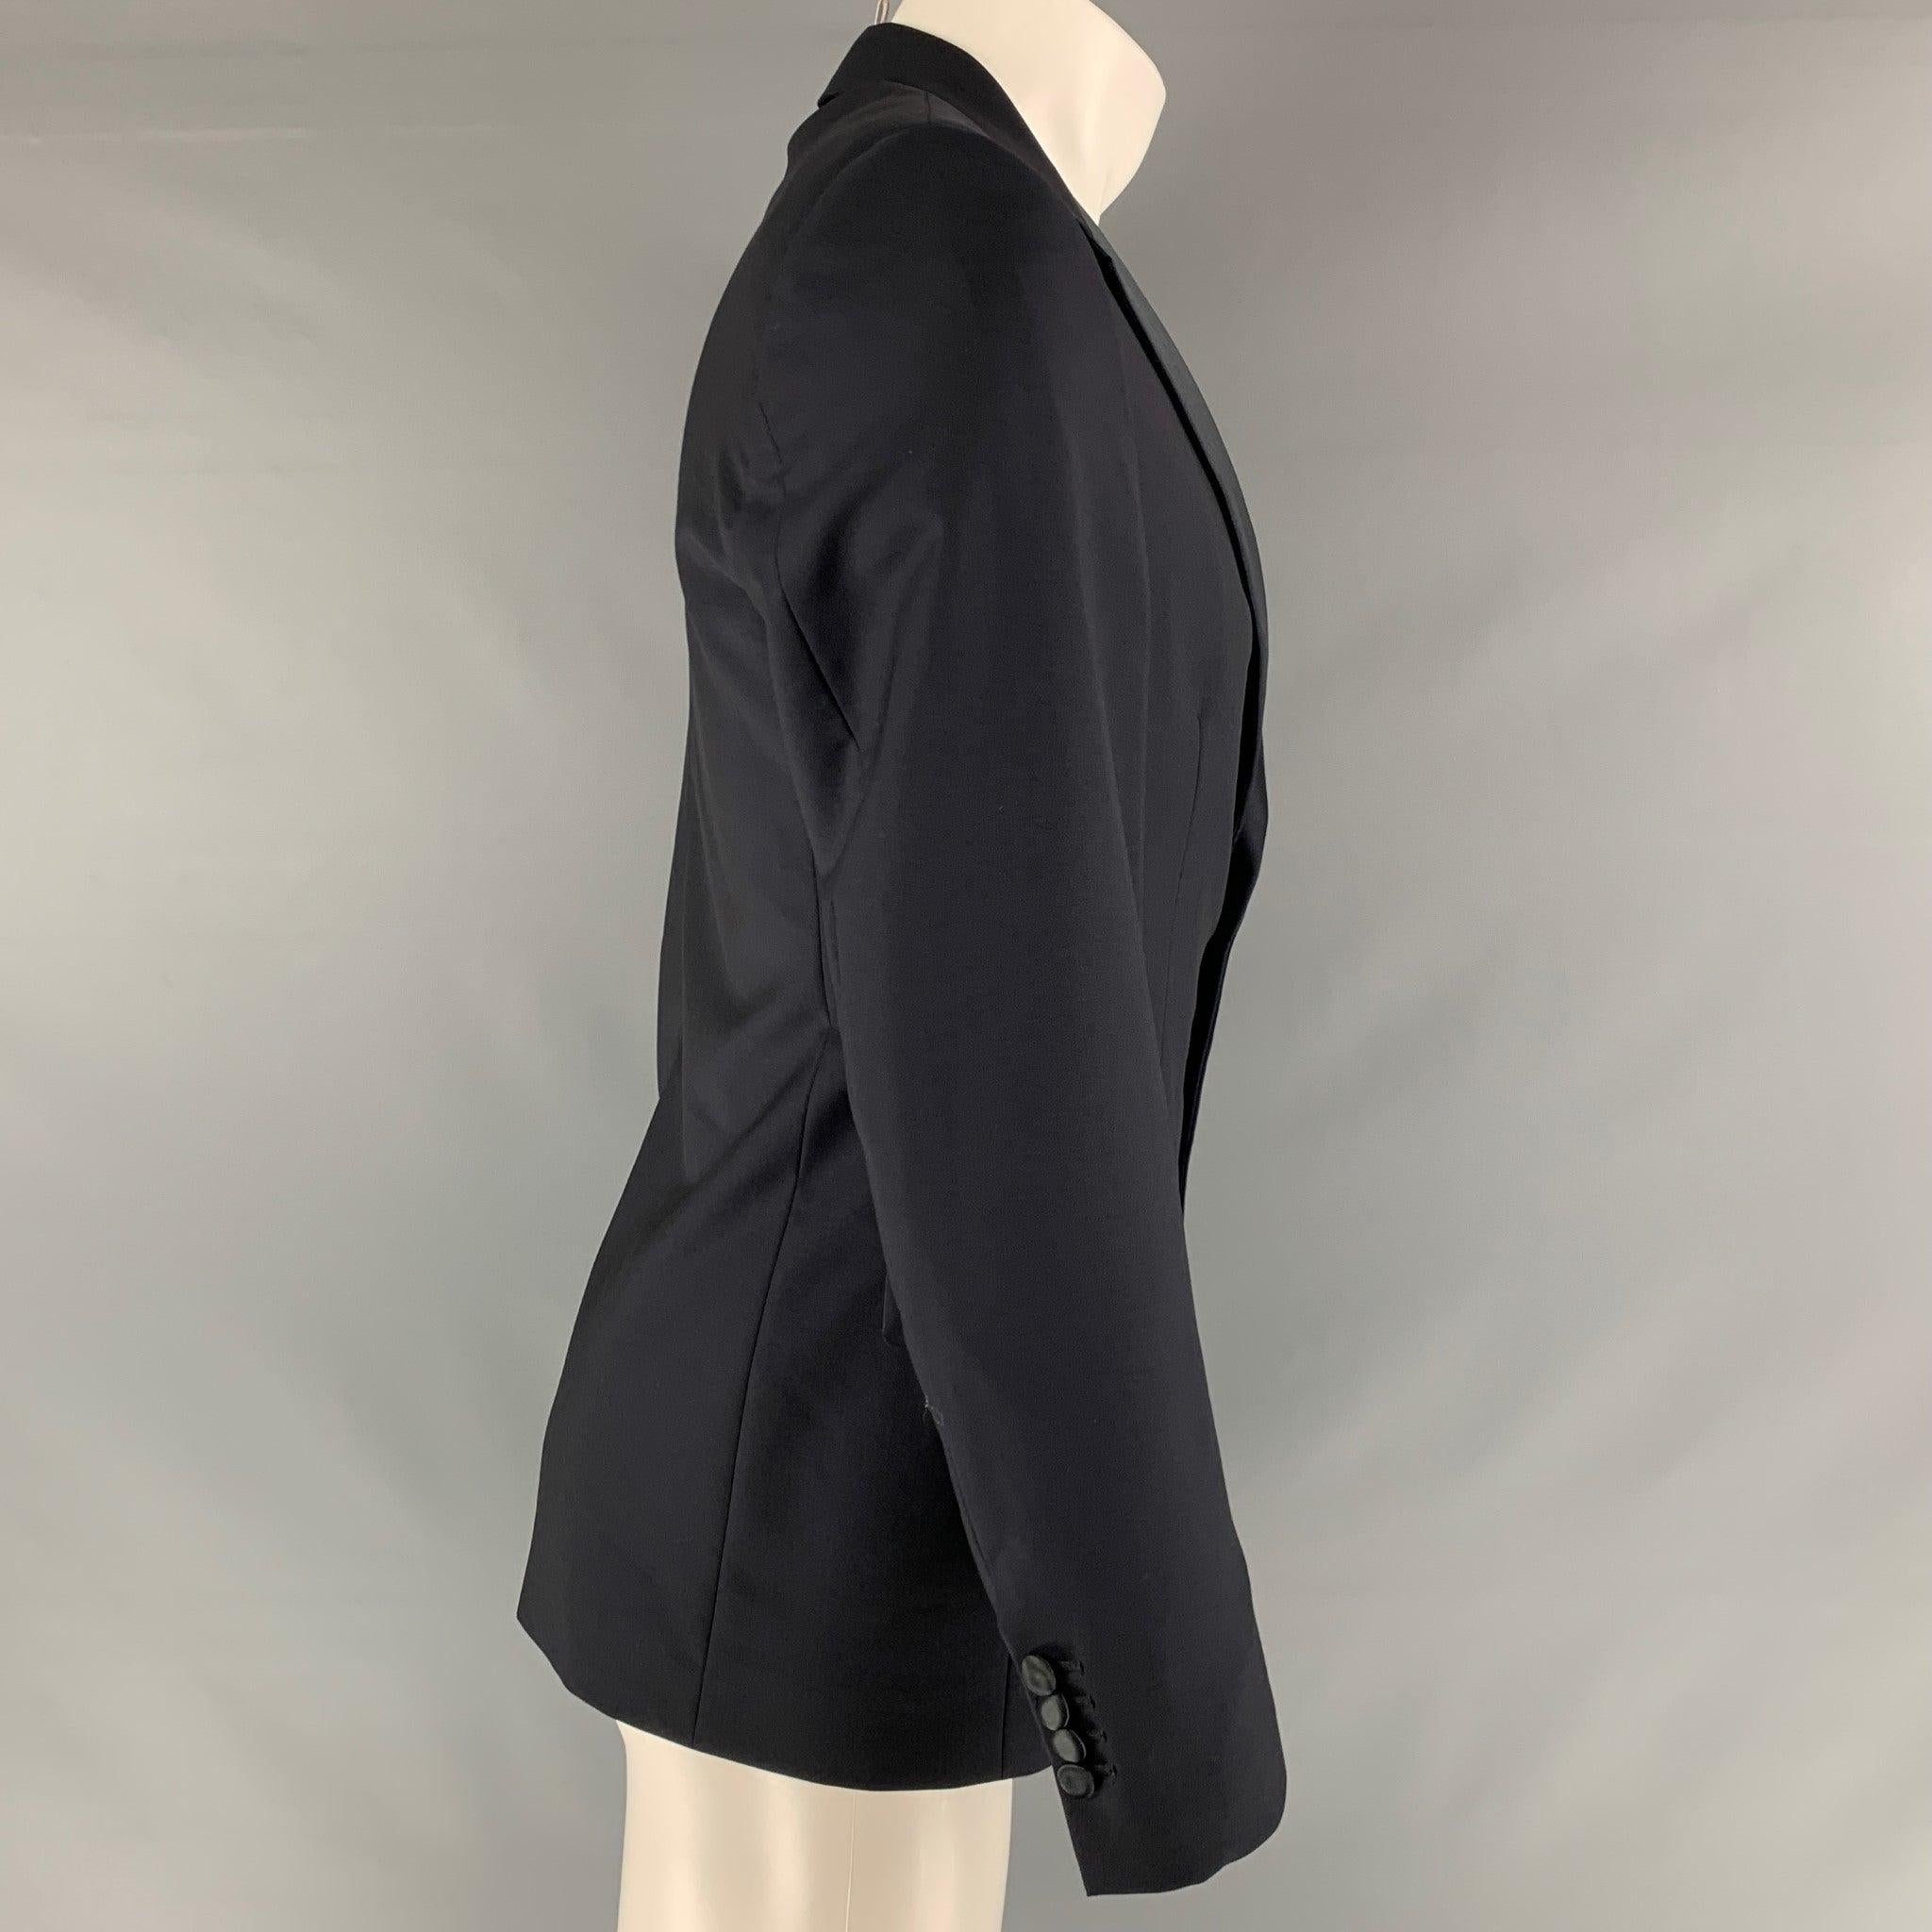 Le manteau sport PRADA est réalisé dans une matière tissée en laine et mohair marine et présente un revers à cran, des poches sur les épaules, des poches à rabat et une fermeture à deux boutons. Fabriqué en Italie. Excellent état. 

Marqué :   48